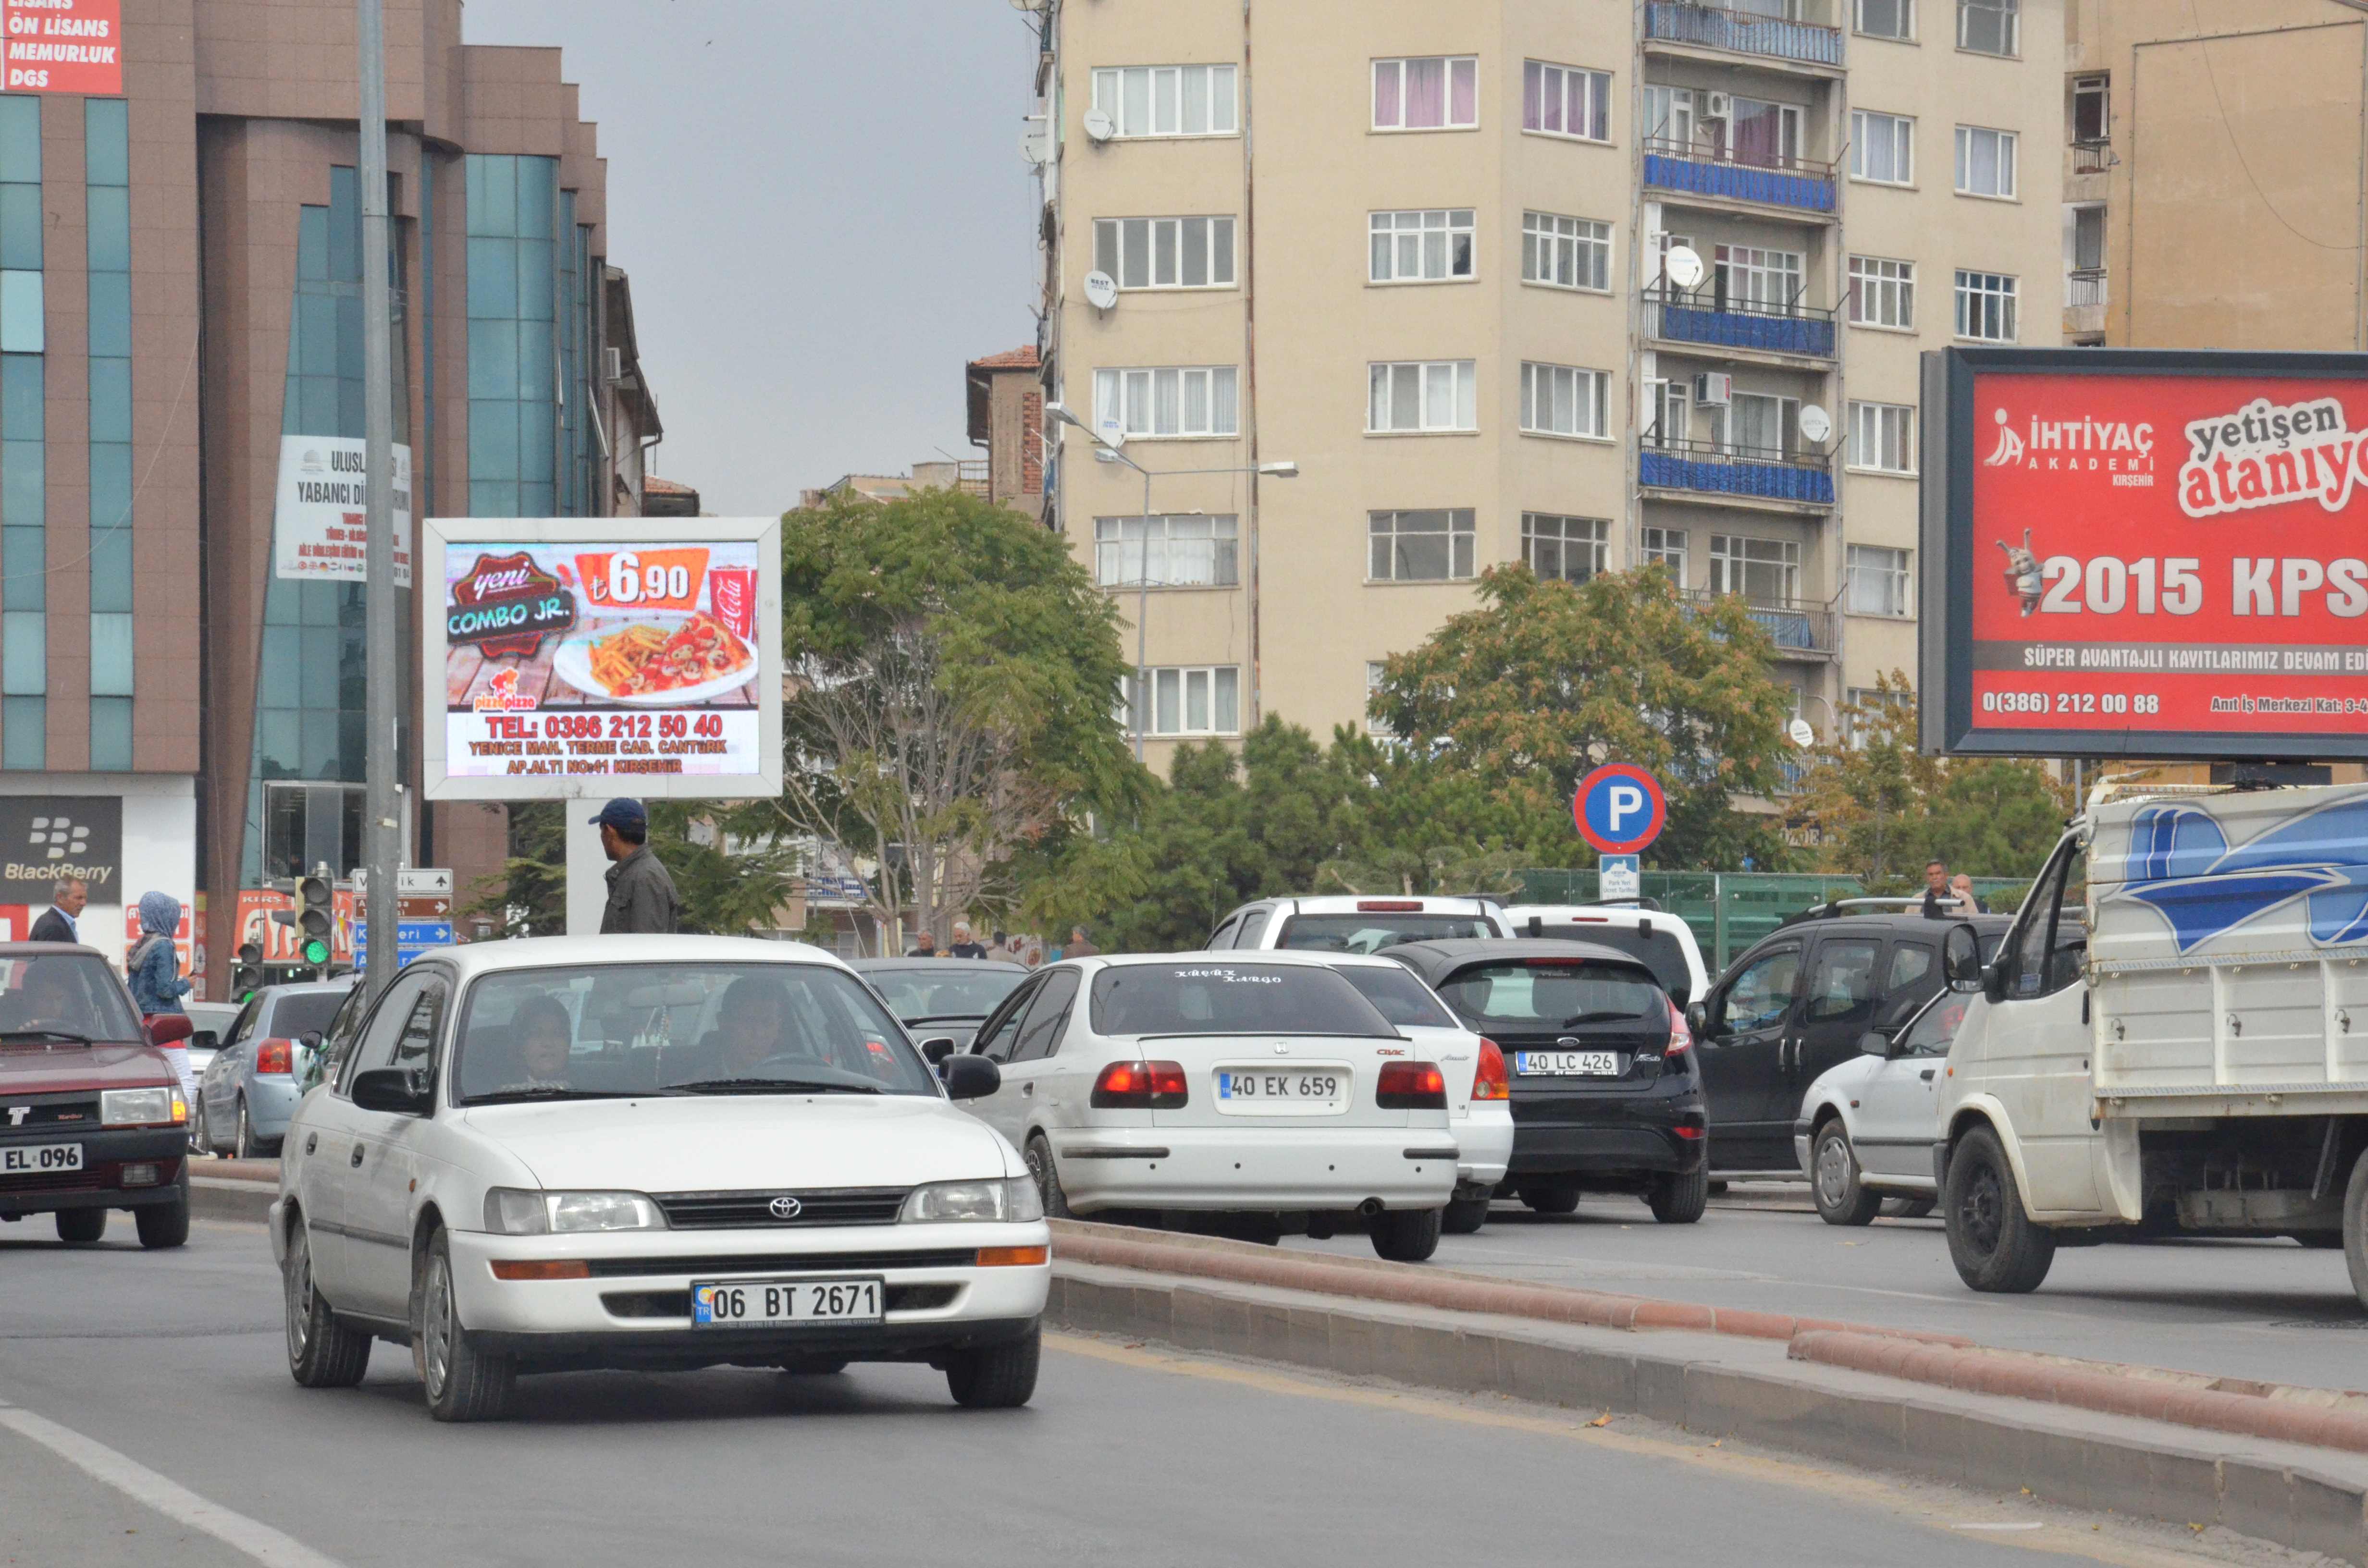 Kırşehir’de usulsüz yapı denetimleri  kapatılacak